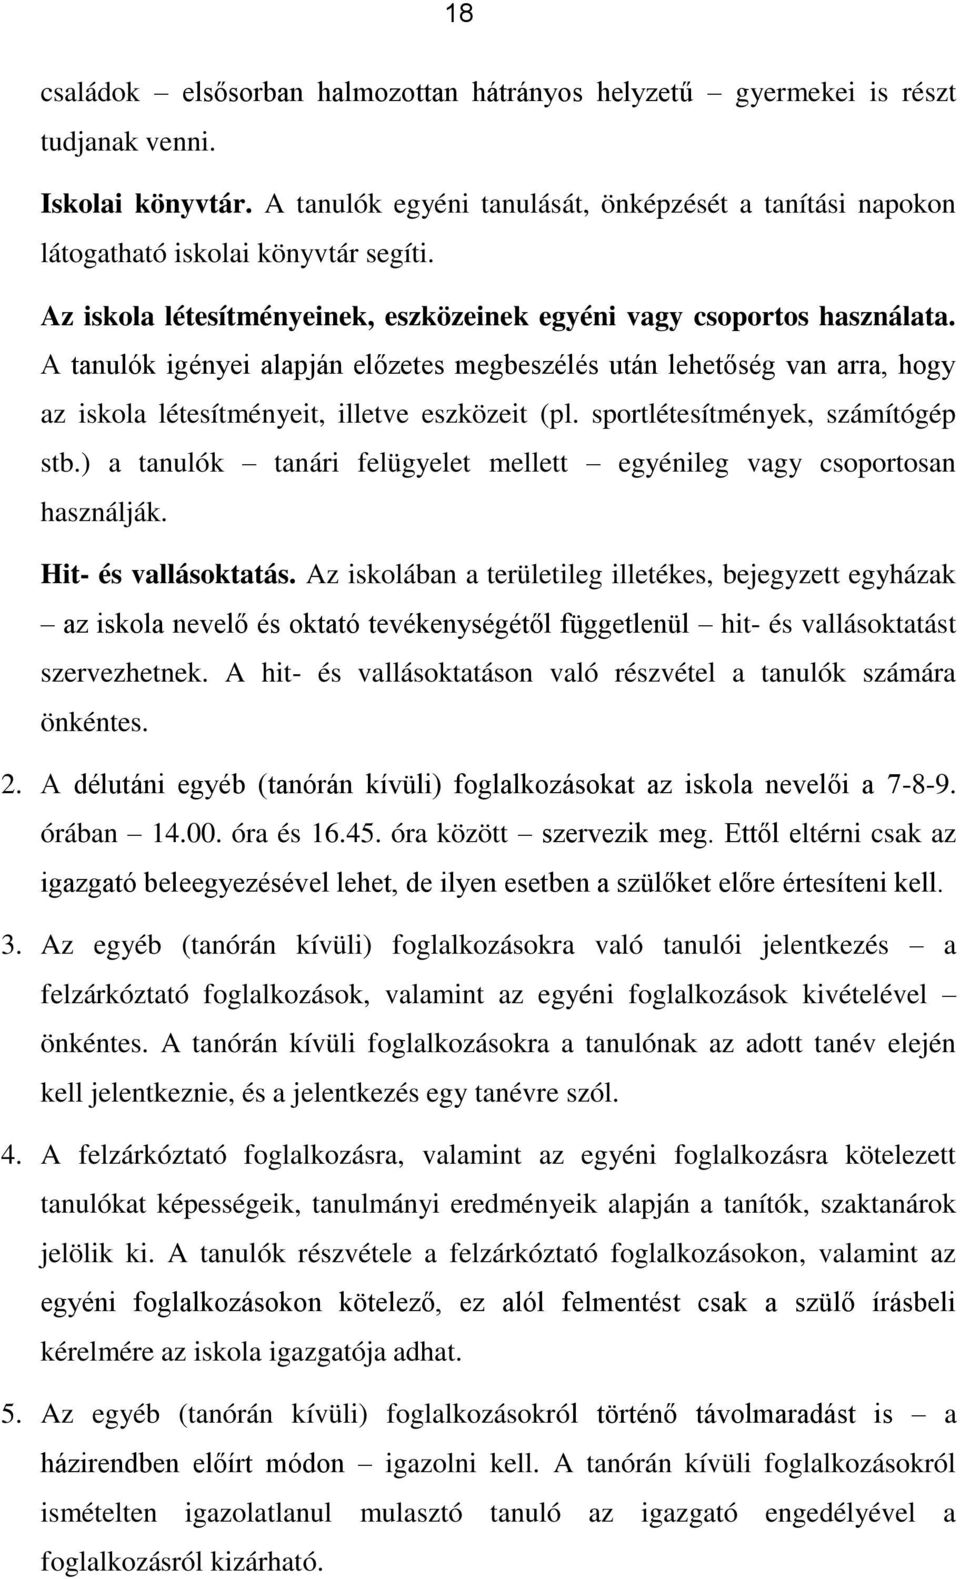 Vári Emil Társulási Általános Iskola Házirendje - PDF Ingyenes letöltés